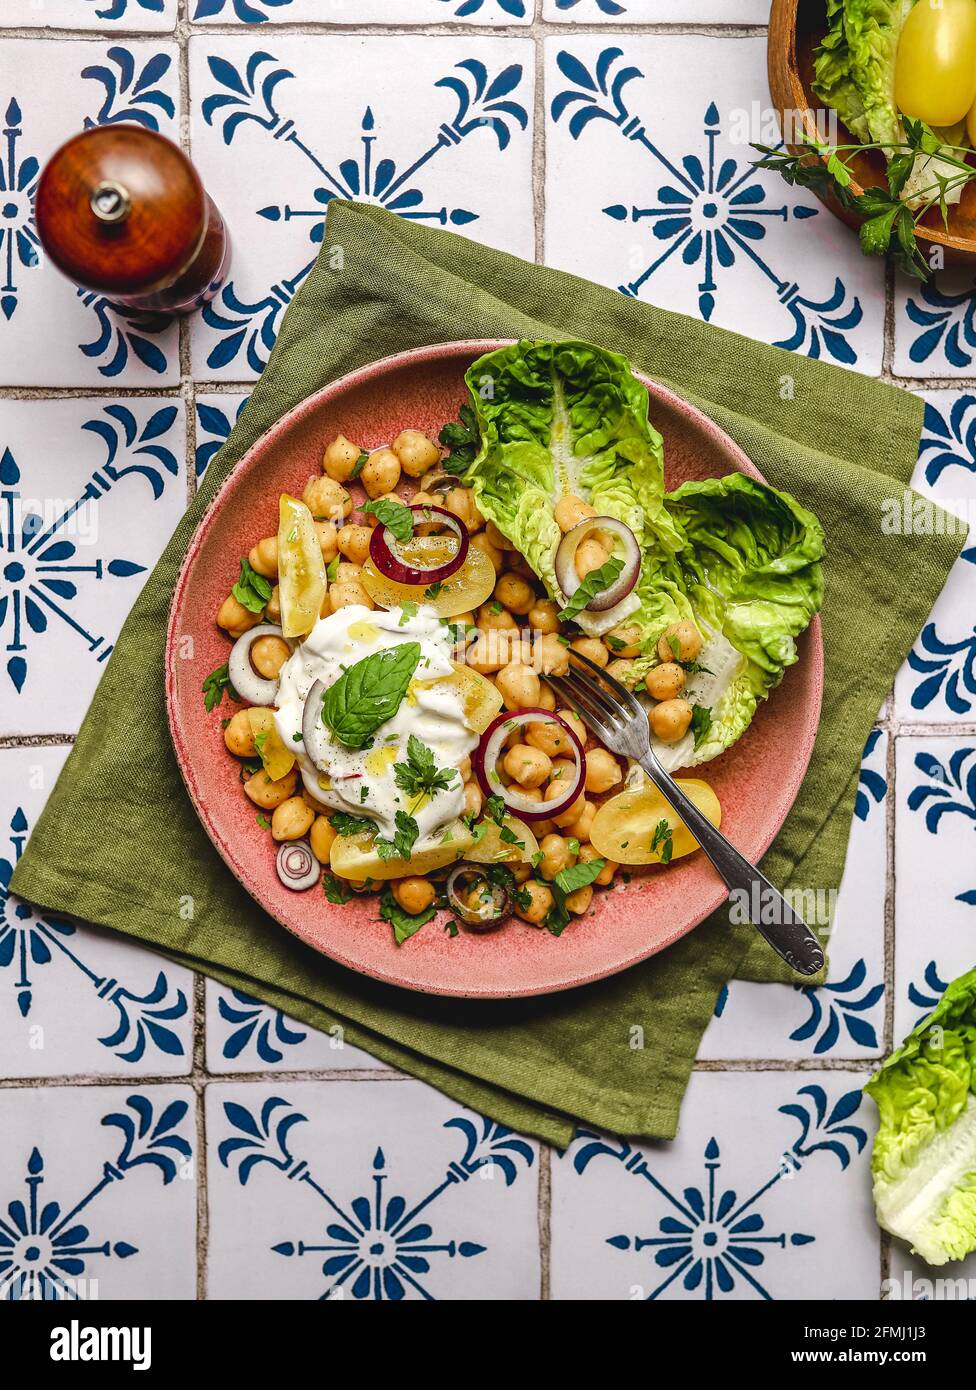 Draufsicht auf appetitliche Kichererbsen mit Burrata-Käse und verschiedenen Sorten Gemüse und Kräuter werden auf dem Tisch serviert Stockfoto